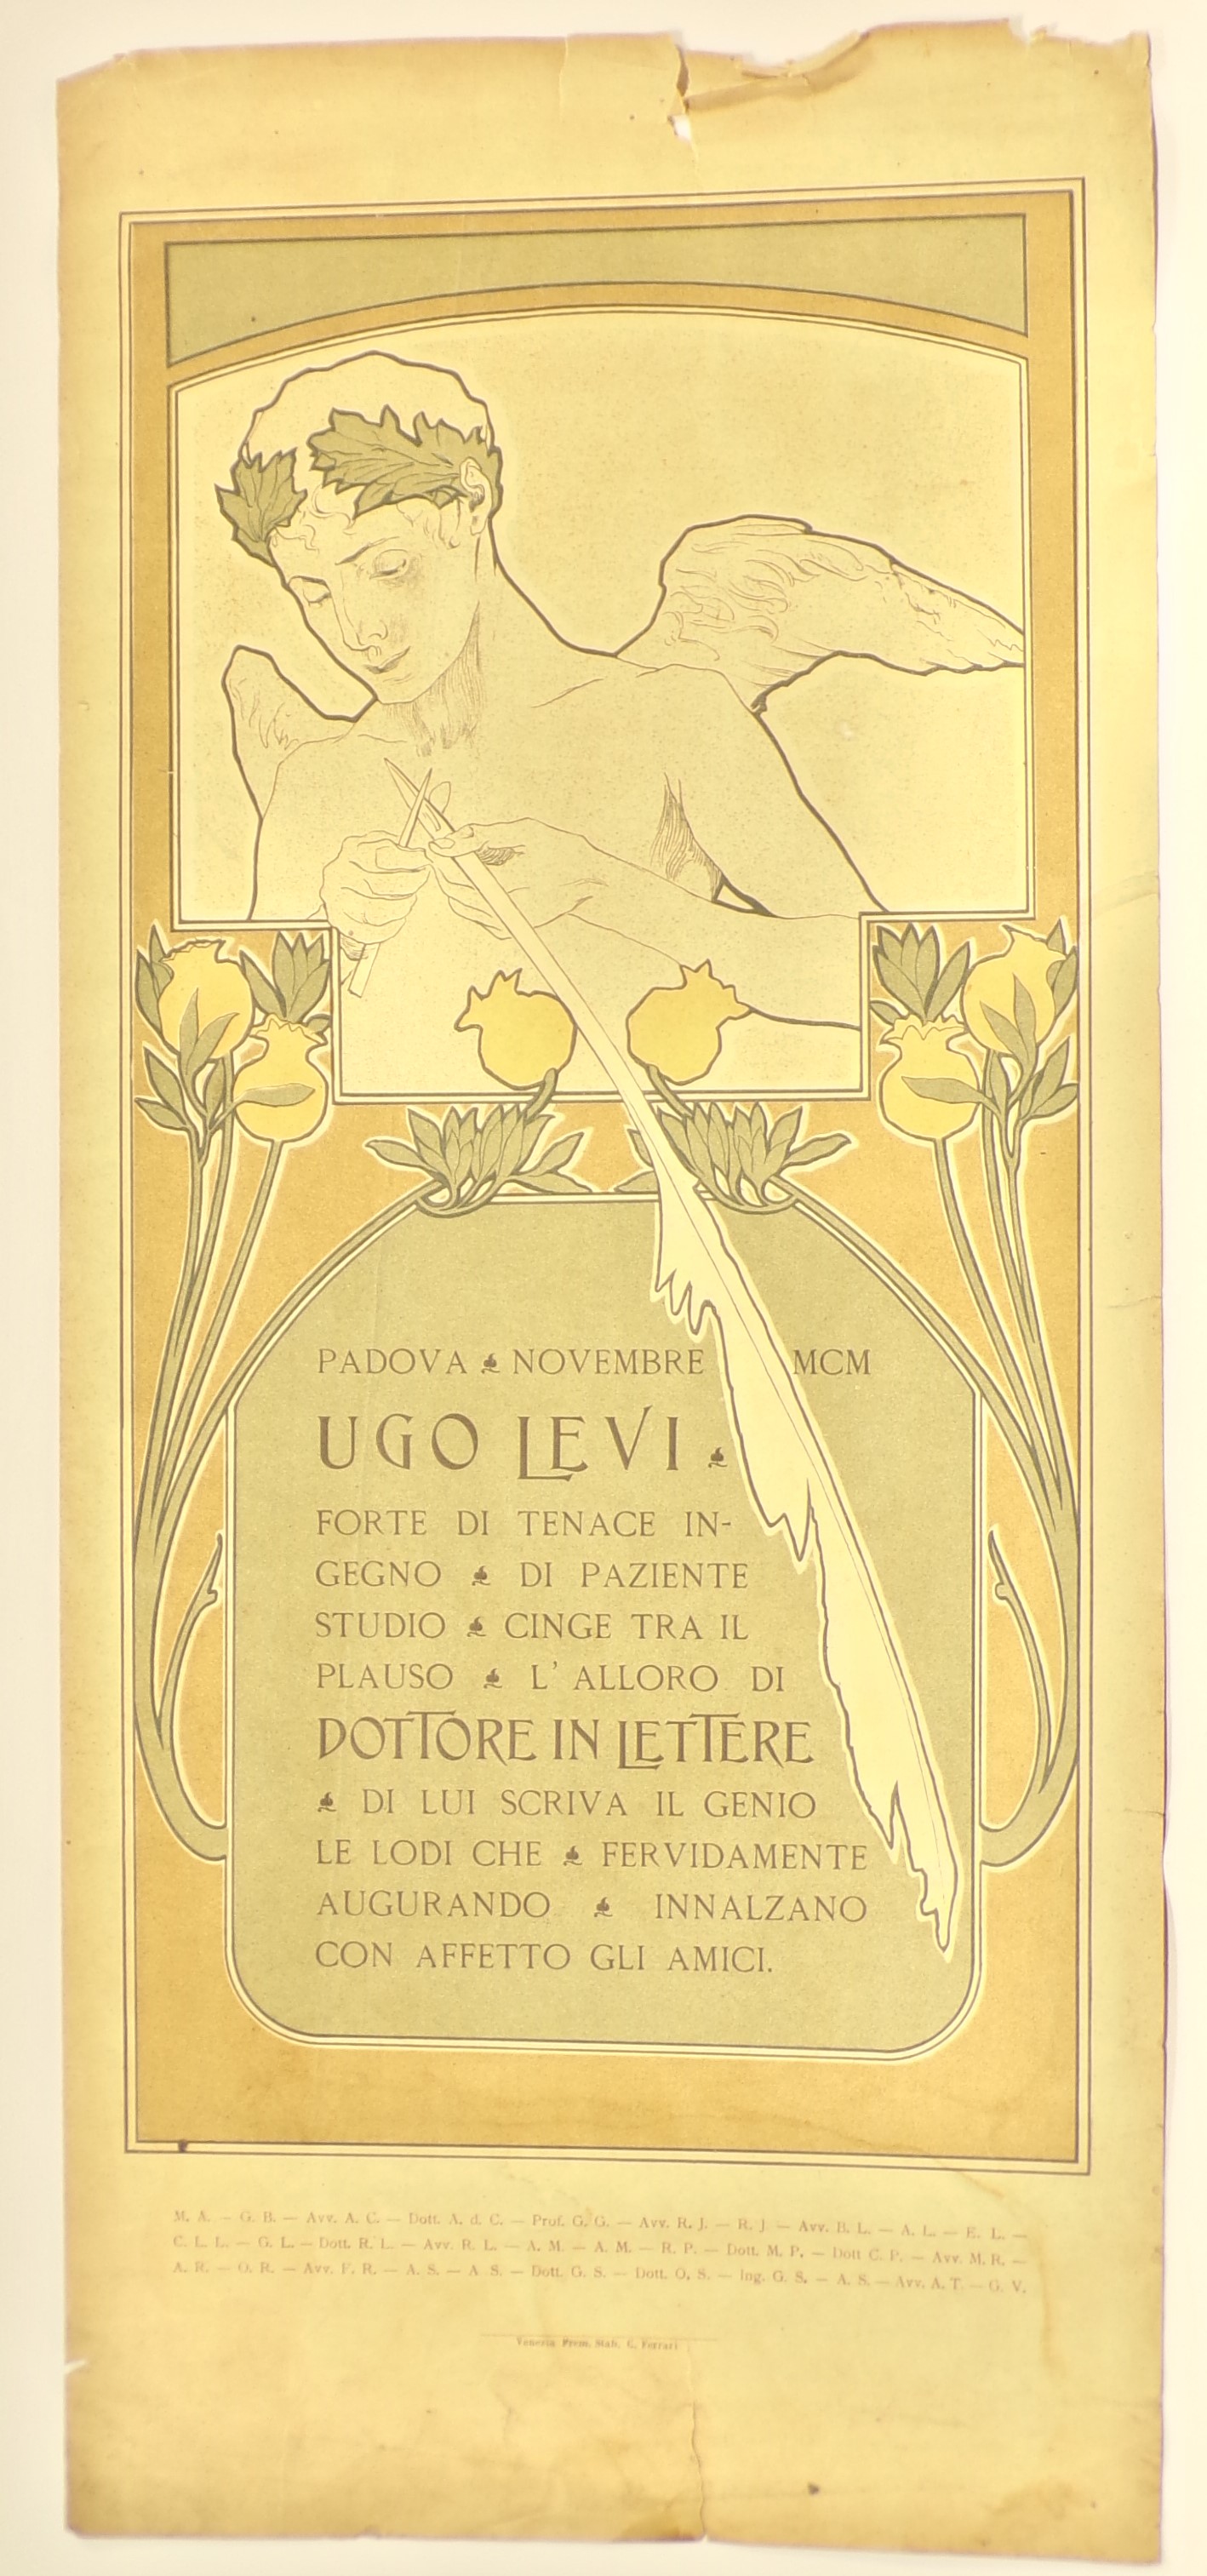 Ugo Levi dottore in lettere, Entro finestra mistilinea, genio della Fama affila il calamo. In basso, motifi decorativi floreali liberty (locandina) - ambito veneziano (inizio XX)